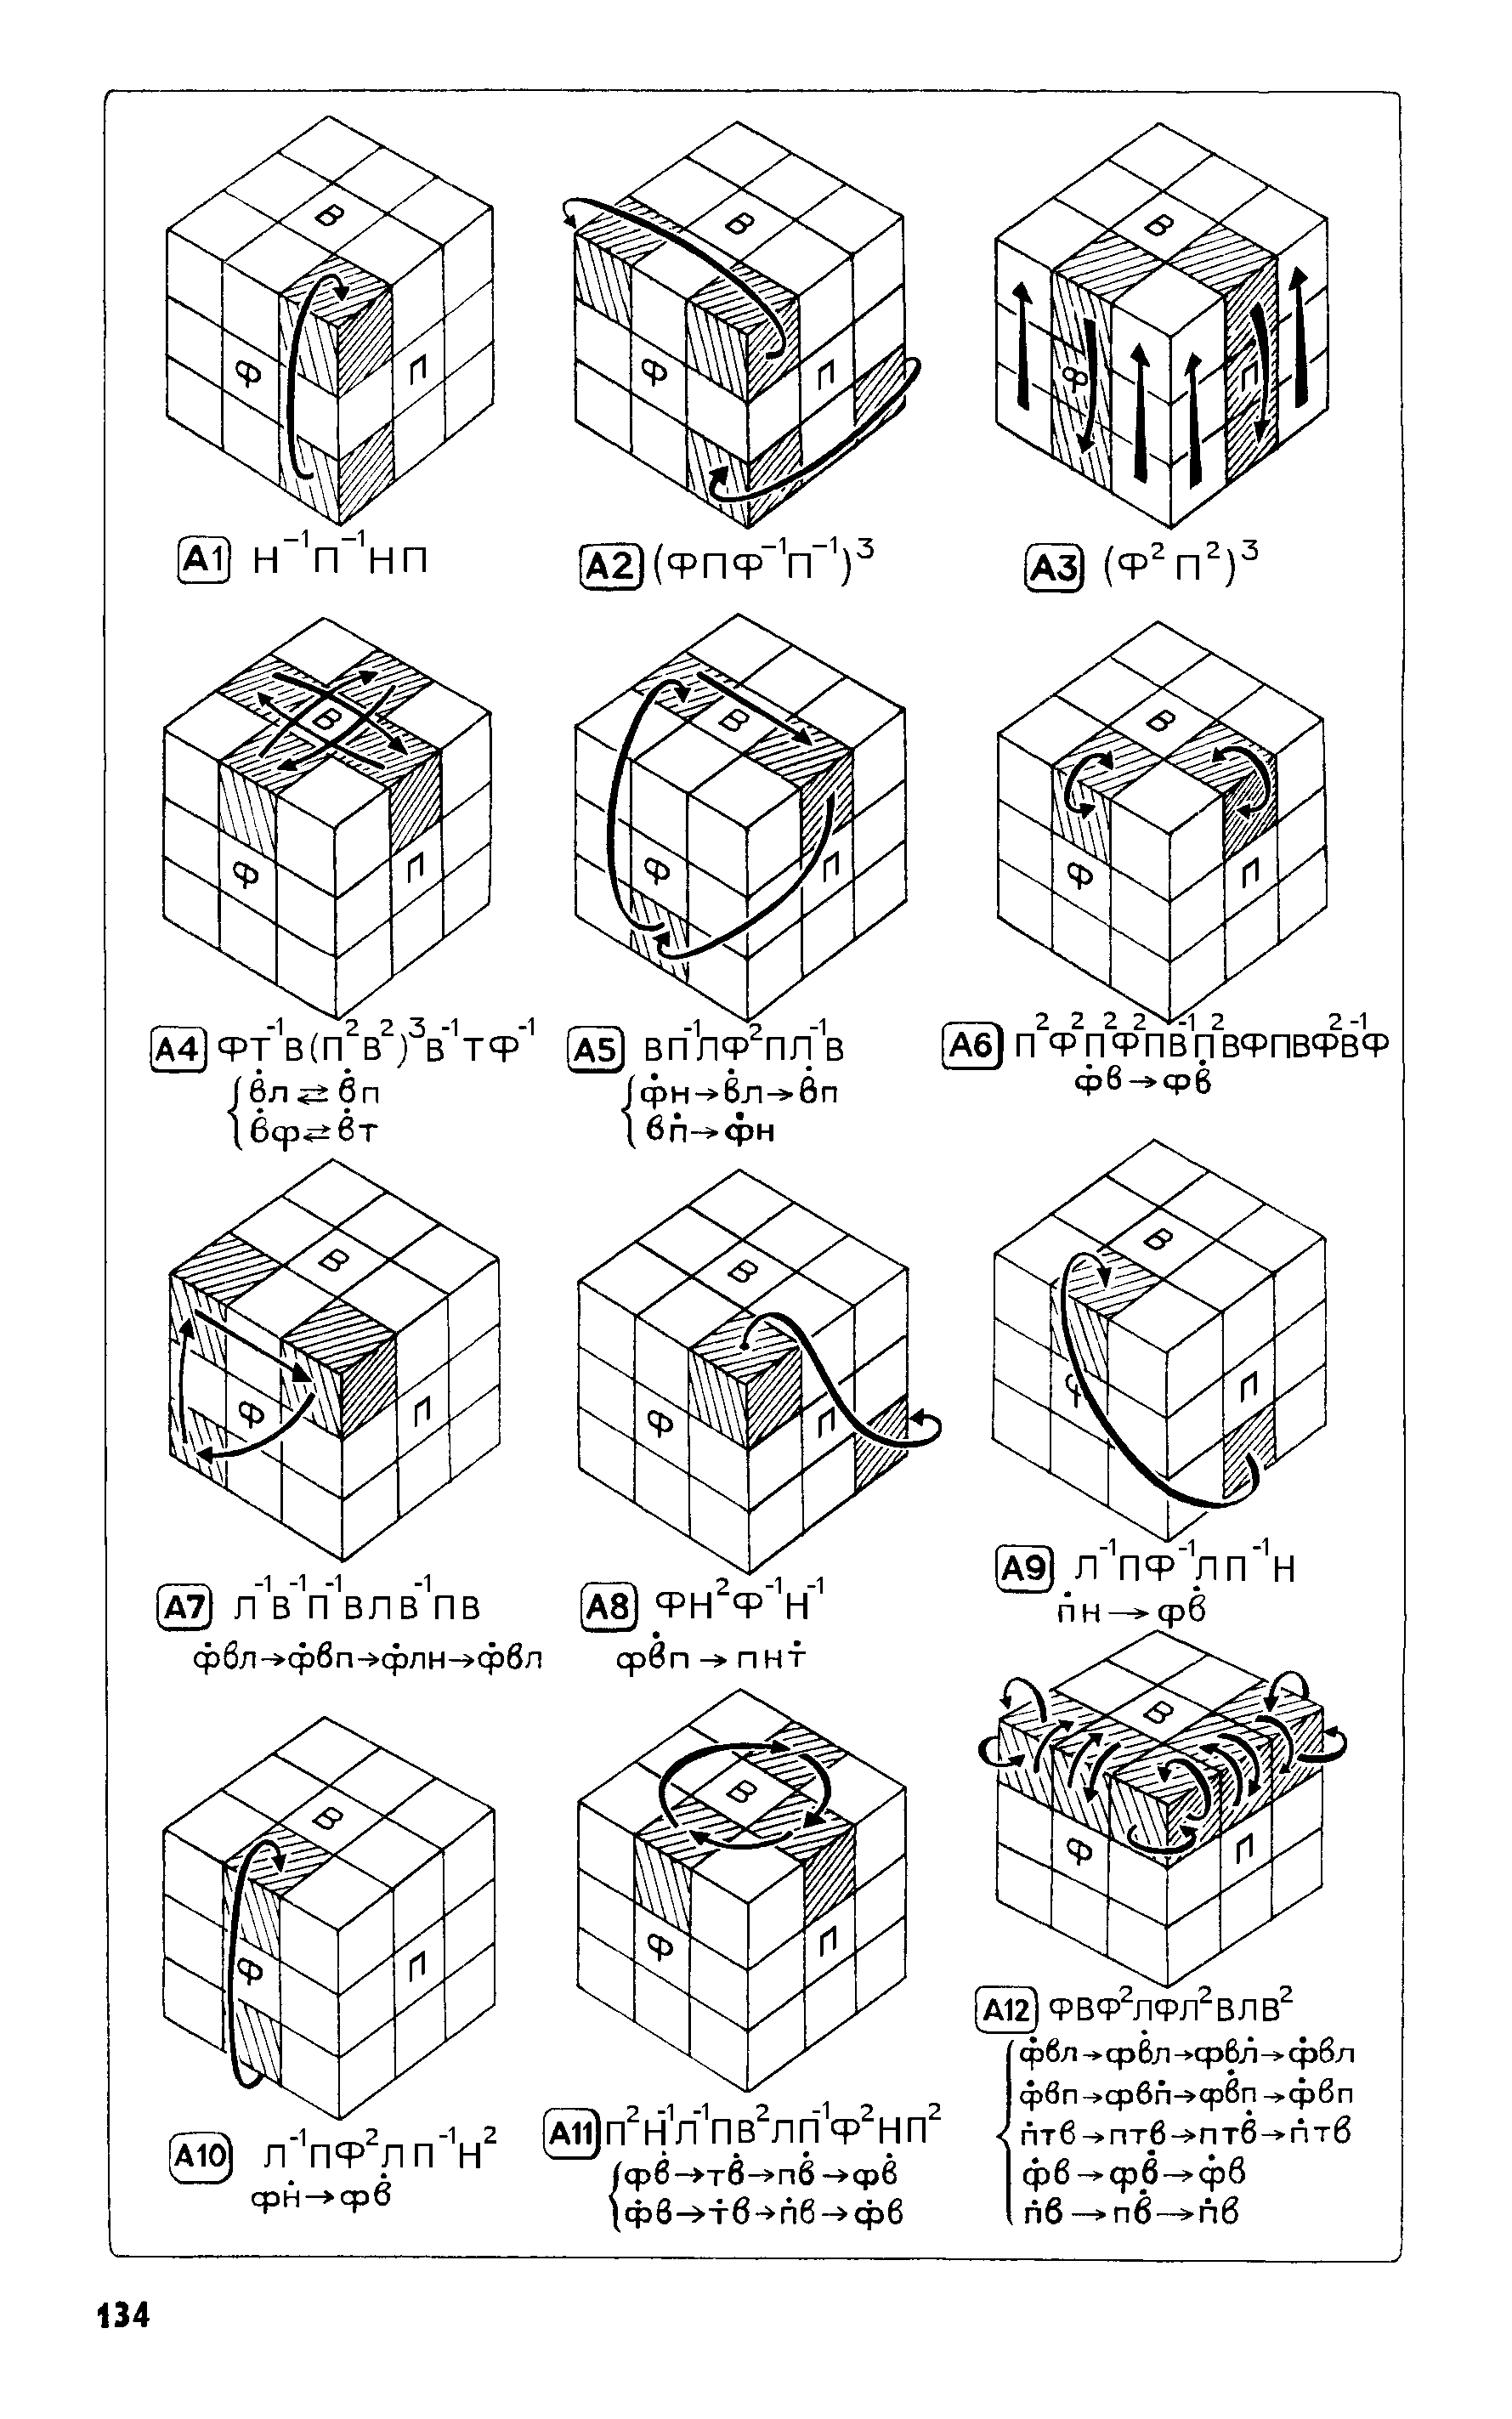 Как собрать кубик рубика для начинающих. Схема сборки кубика Рубика 3х3 для начинающих. Схема сборки кубика Рубика 3x3. Схема сборки кубика Рубика 3х3. Схема сбора кубика Рубика 3х3.